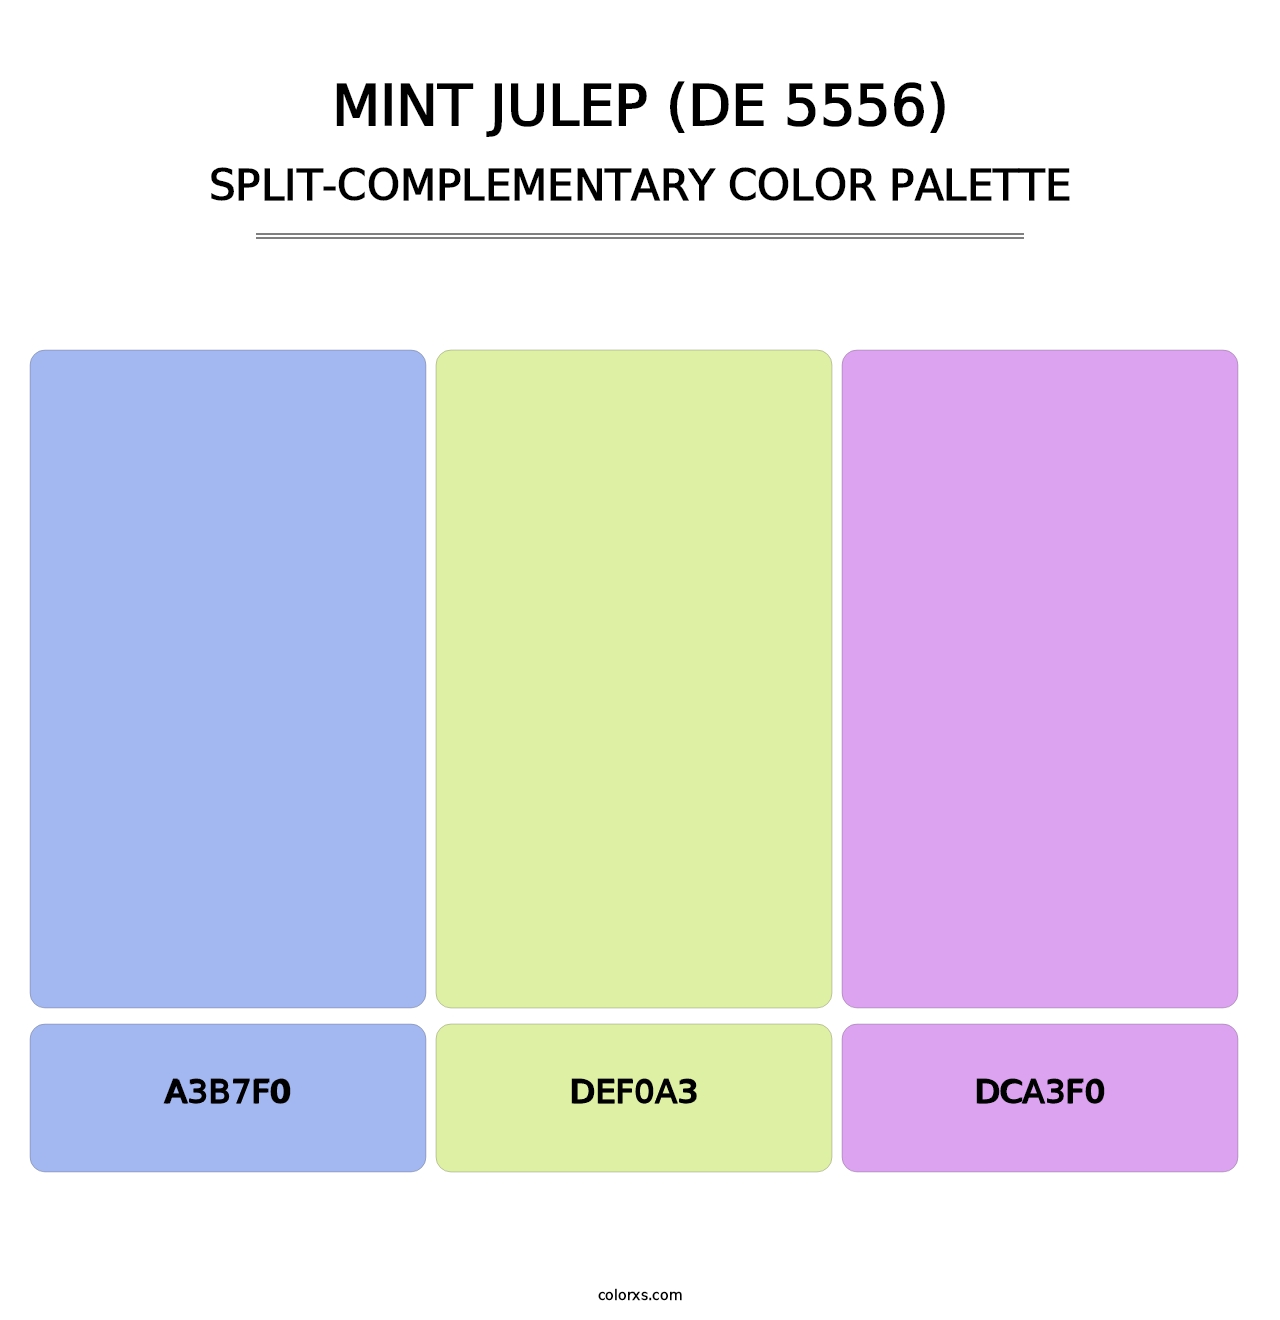 Mint Julep (DE 5556) - Split-Complementary Color Palette